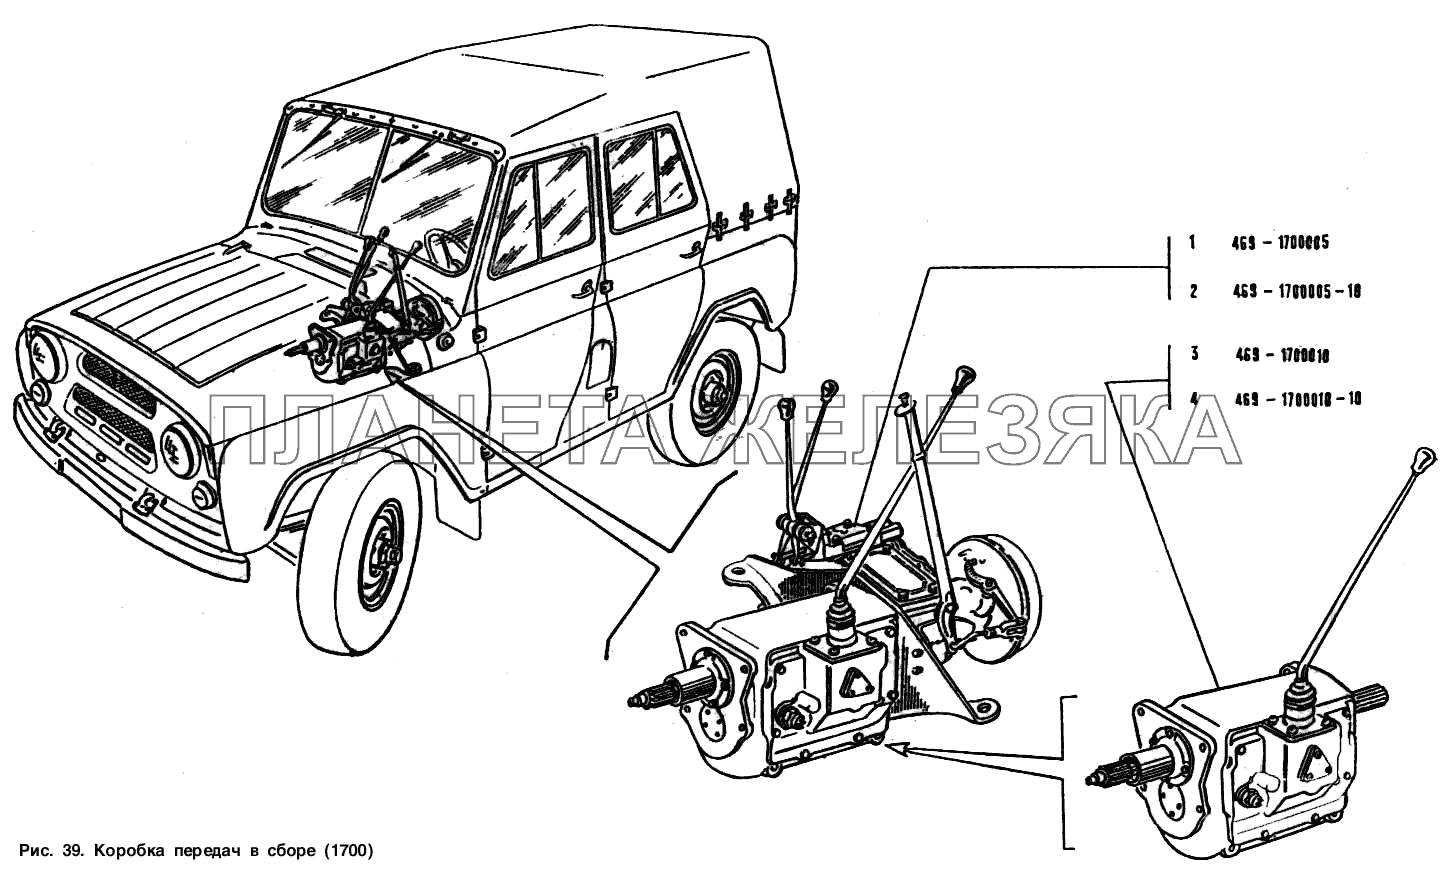 Коробка передач и сборе УАЗ-3151